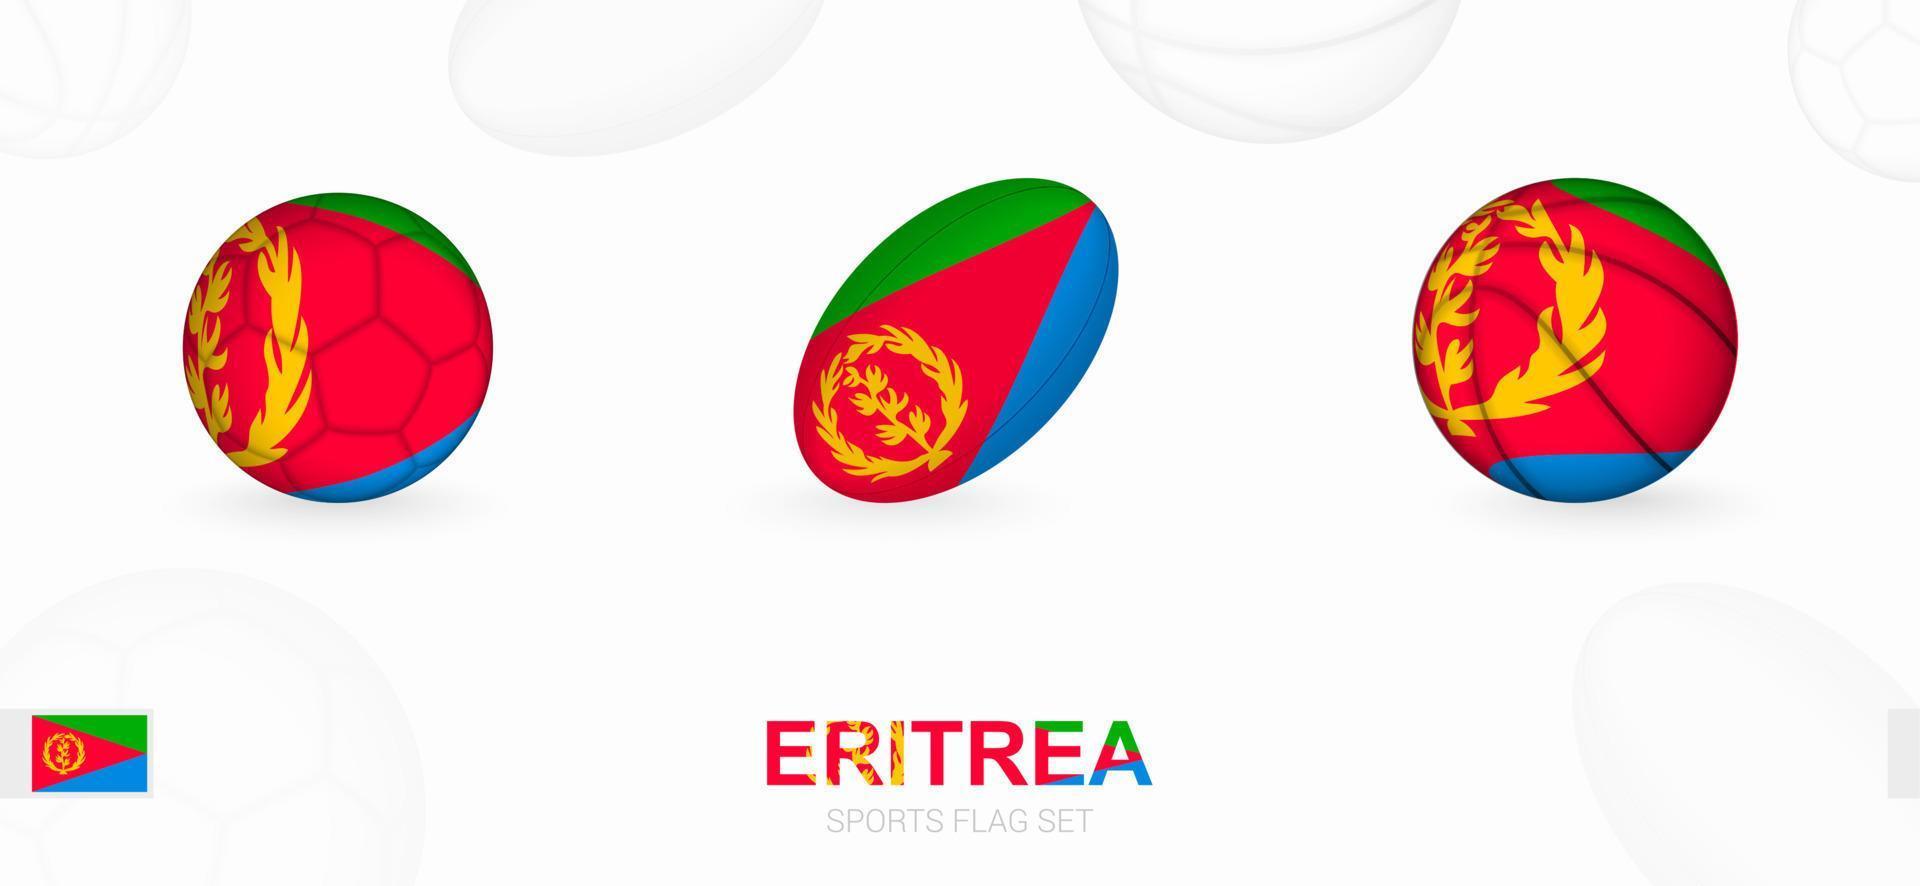 Esportes ícones para futebol, rúgbi e basquetebol com a bandeira do eritreia. vetor